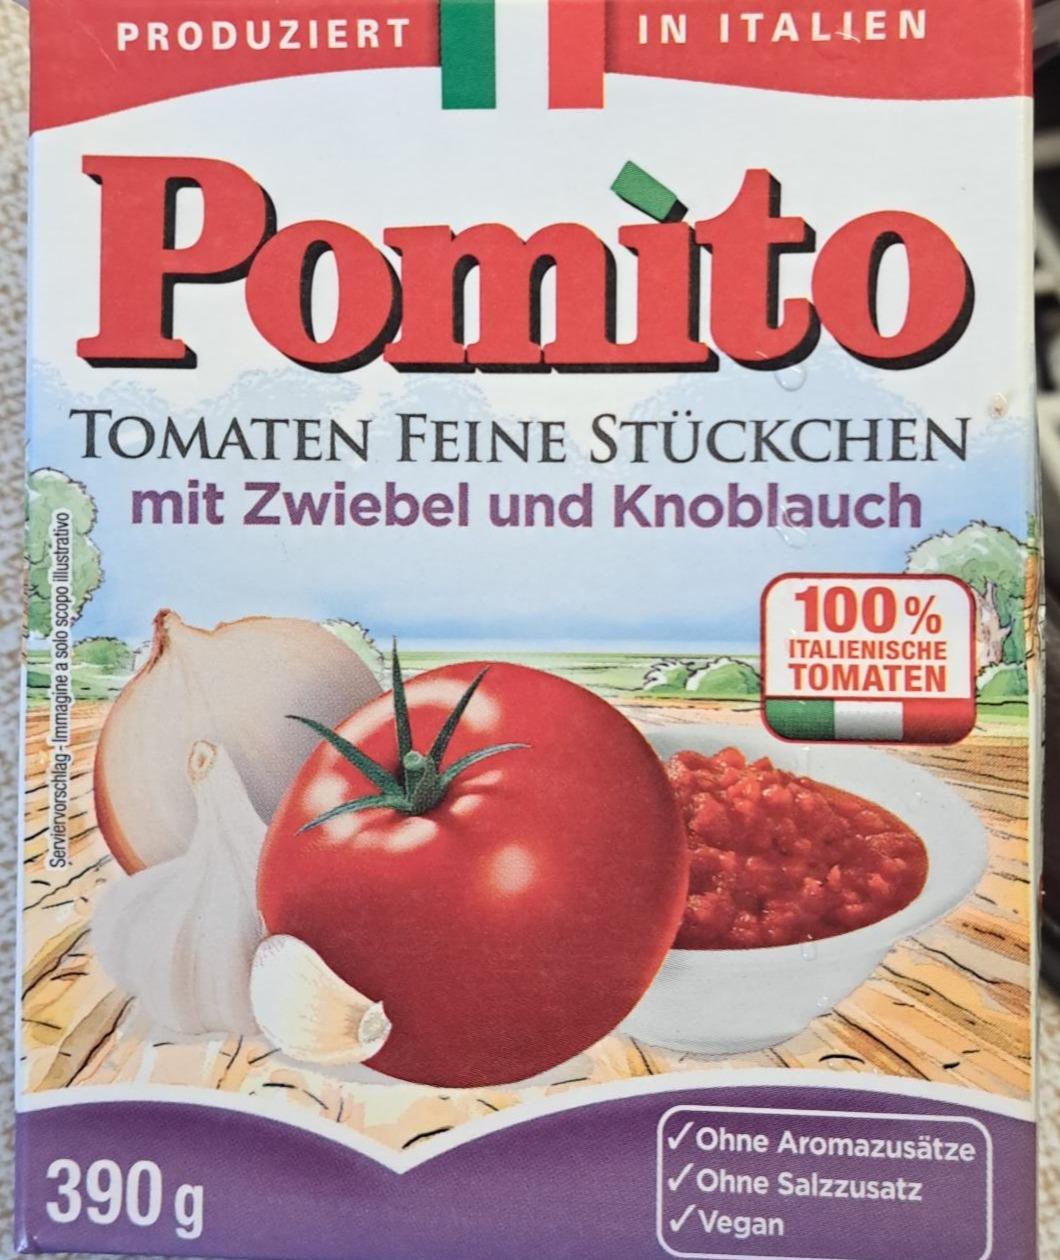 Fotografie - Tomaten feine Stückchen mit Zwiebel und Knoblauch Pomito